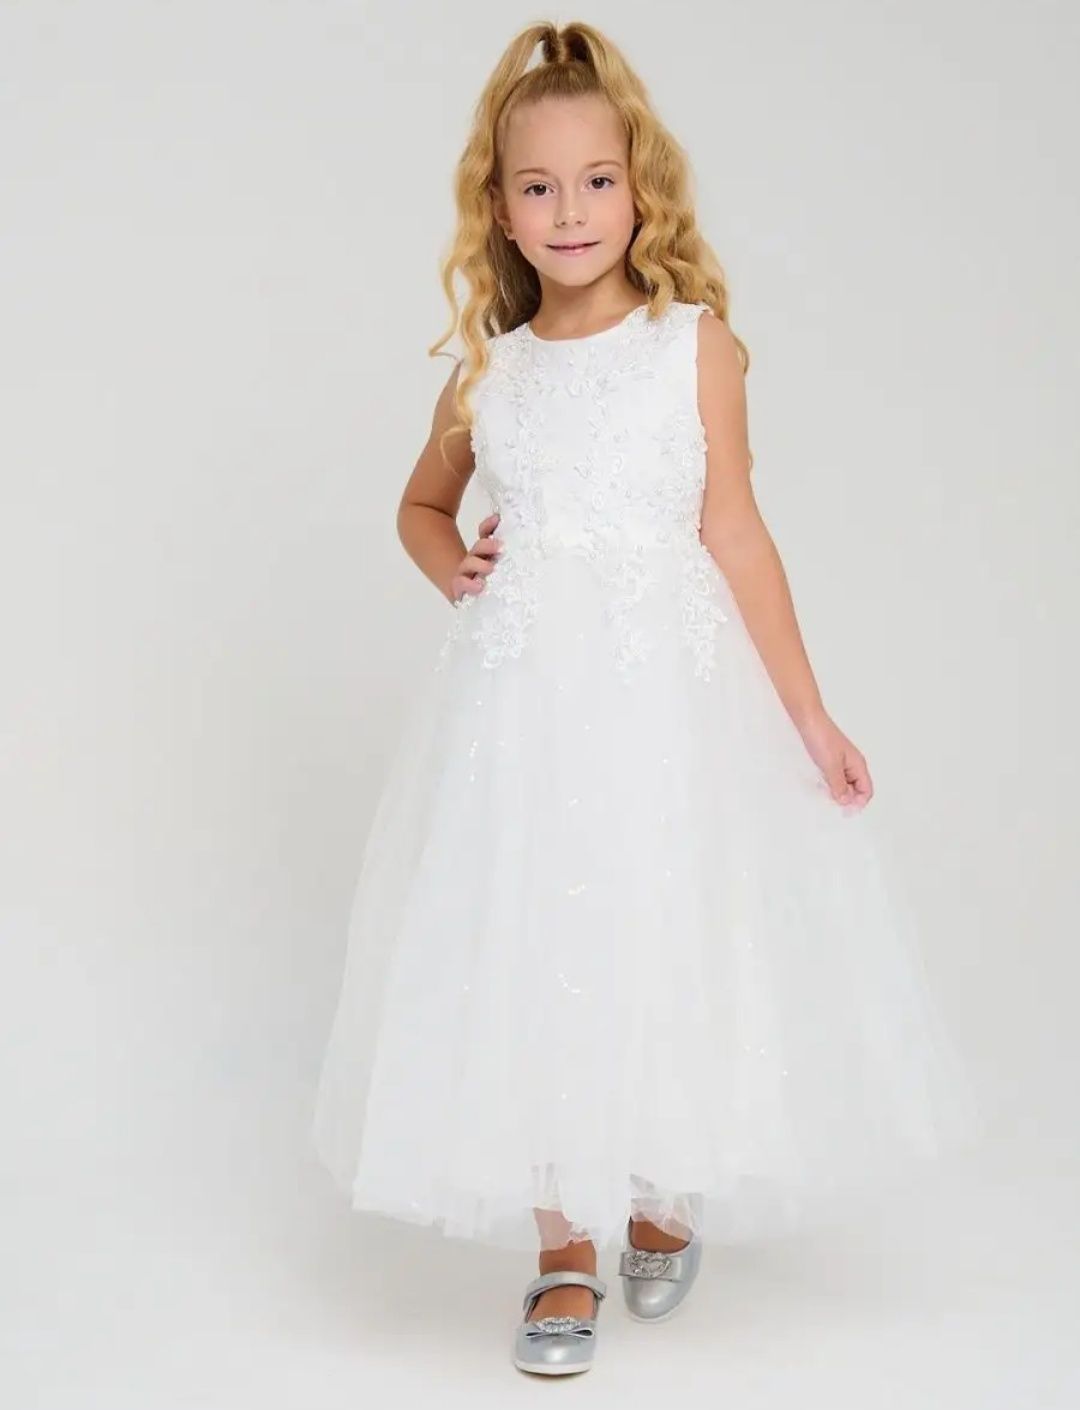 Белоснежный платье девочке